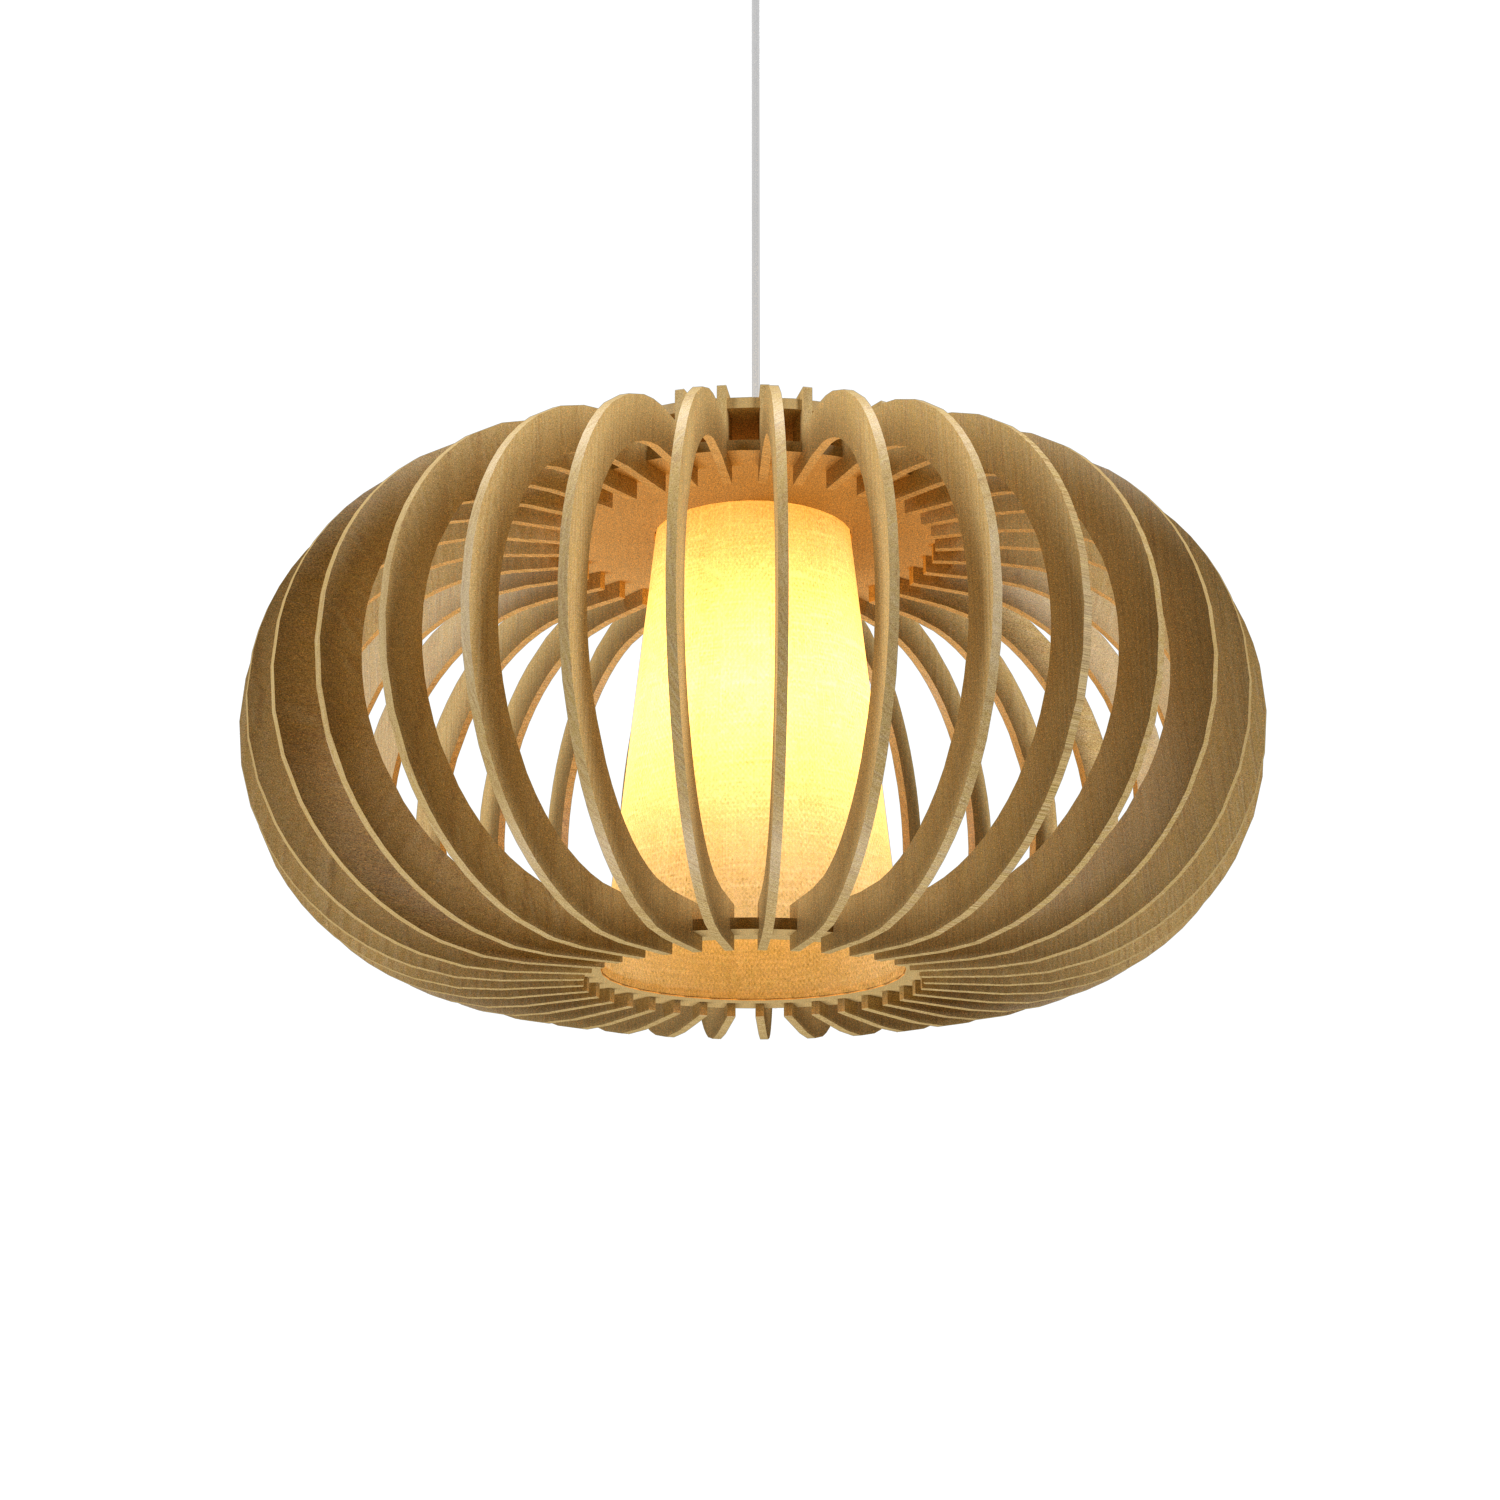 Pendant Lamp Accord Stecche Di Legno 1217 - Stecche Di Legno Line Accord Lighting | 49. Organic Gold